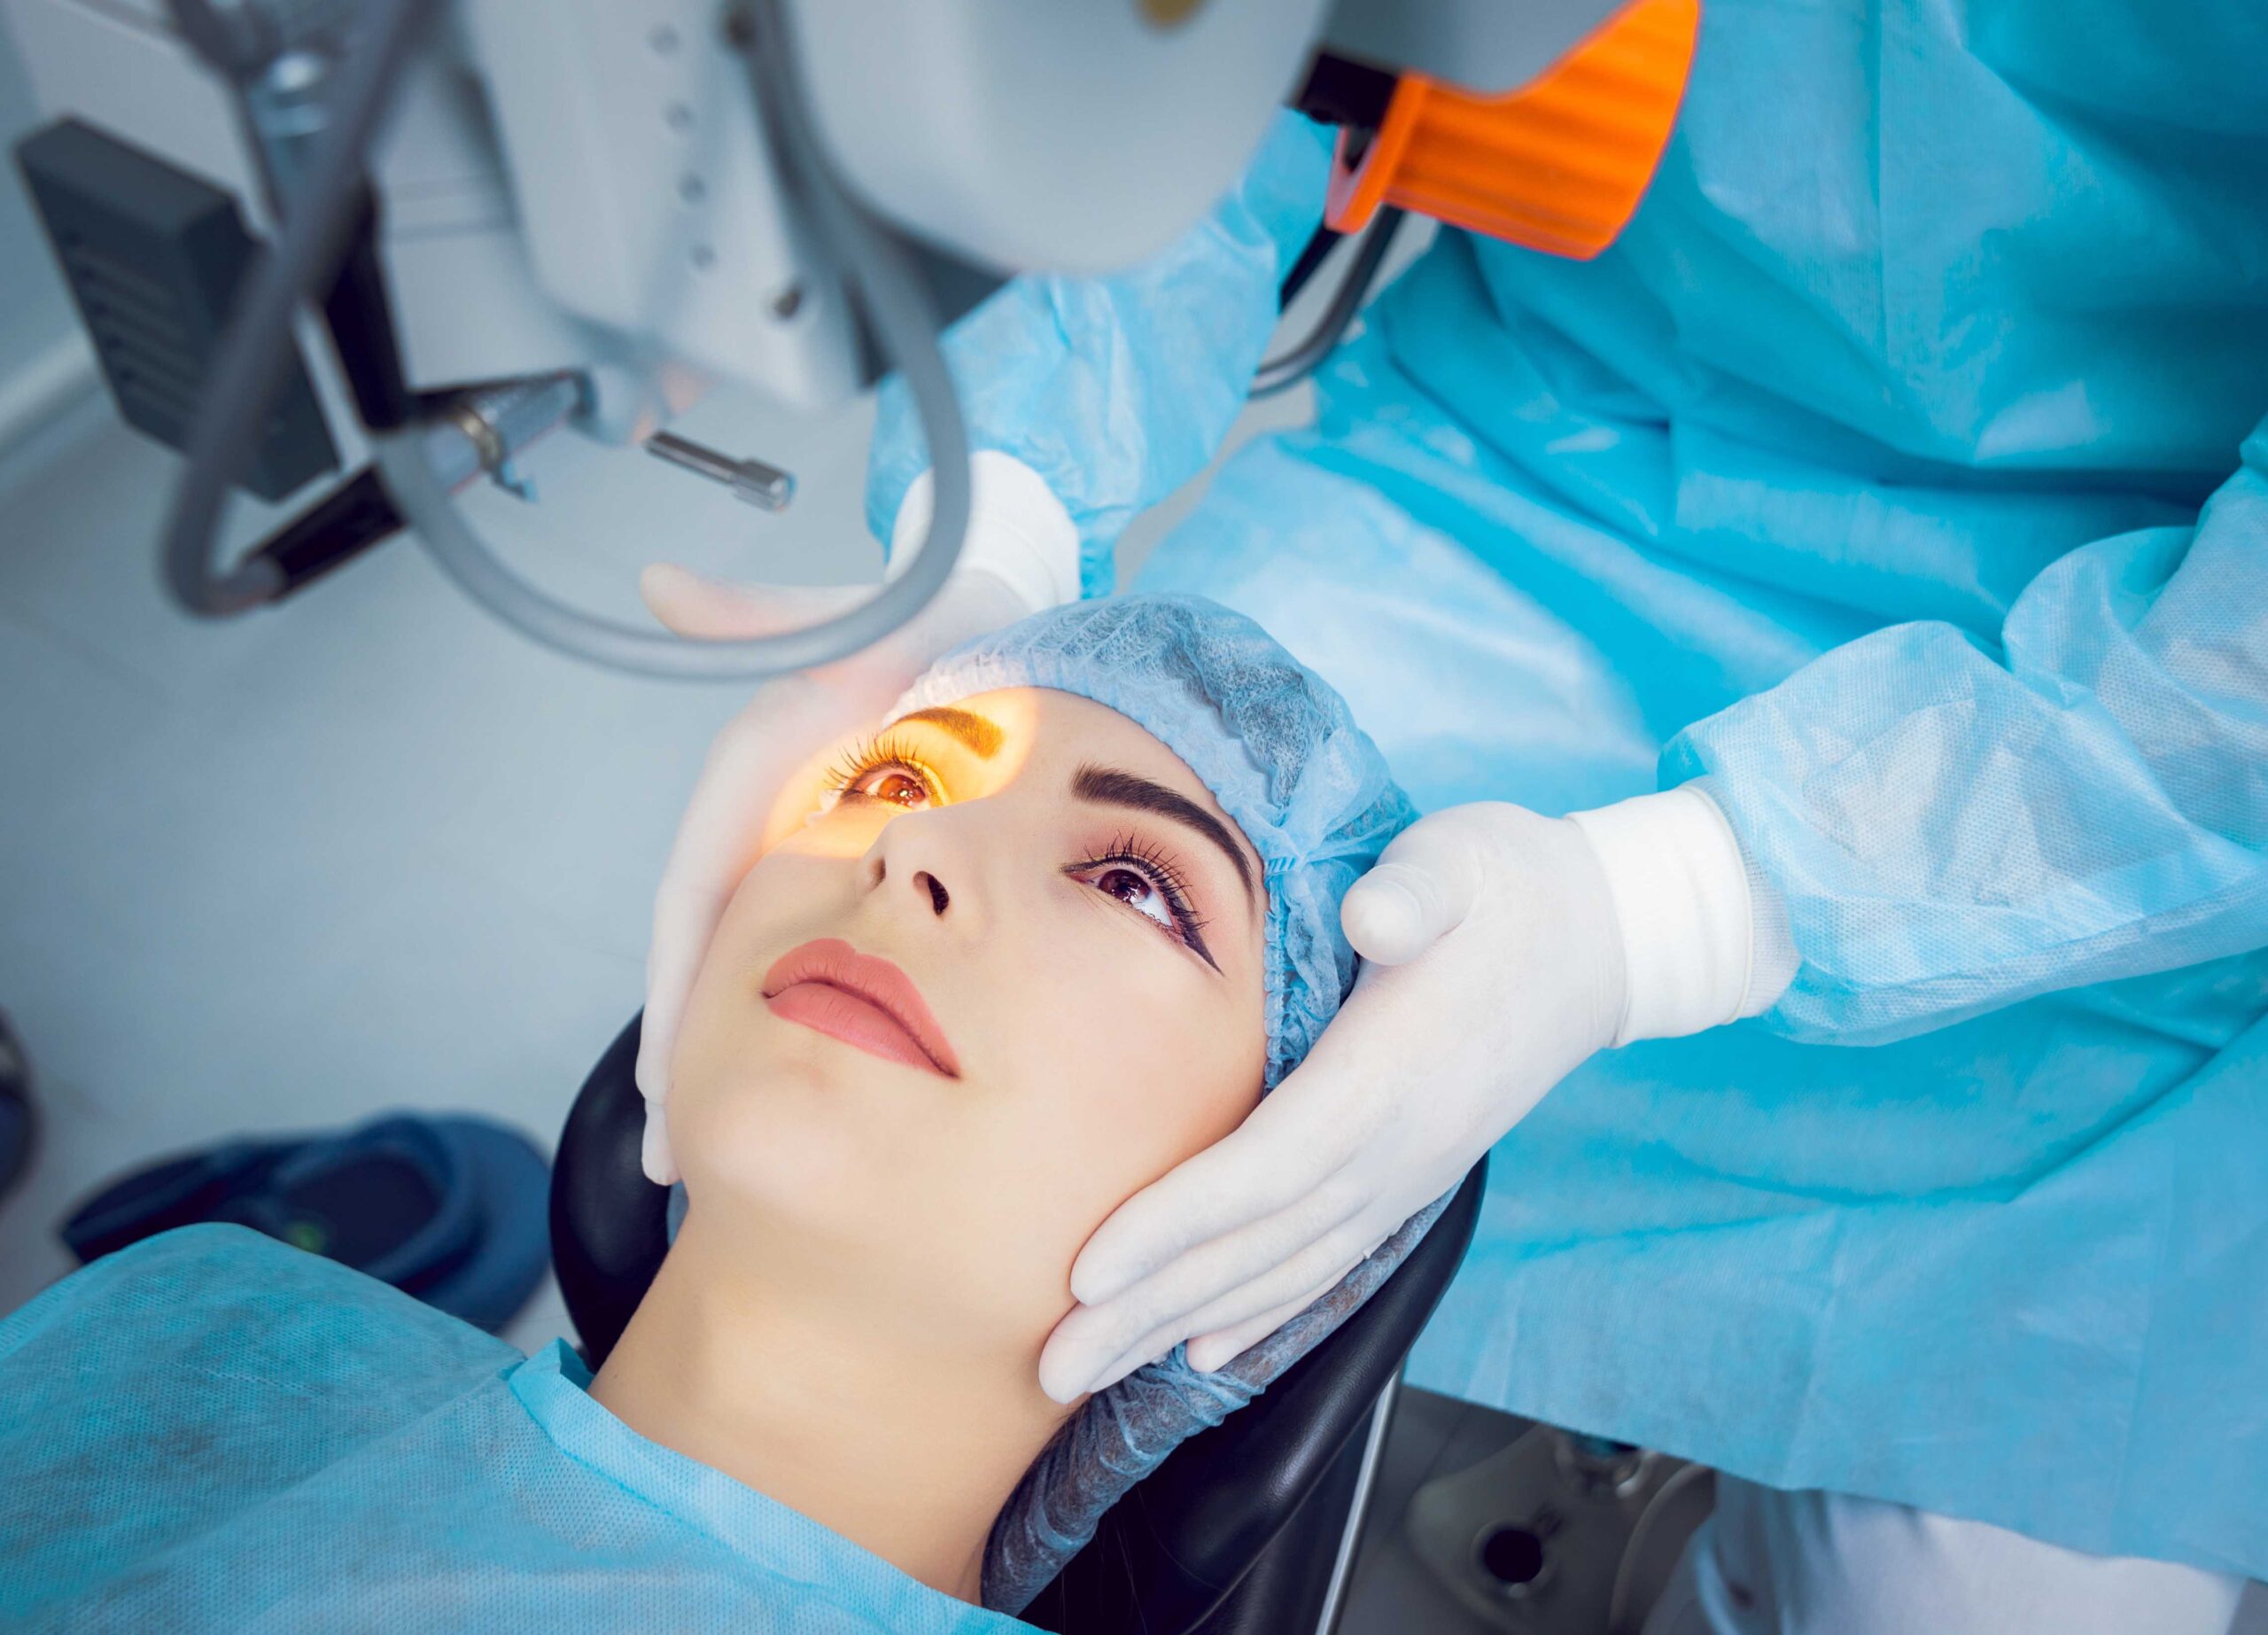 Лазерная коррекция зрения больничный. Лазерная хирургия глаза. Лазерная операция на зрение. Лазерная коррекция глаз. Лазер в пластической хирургии.